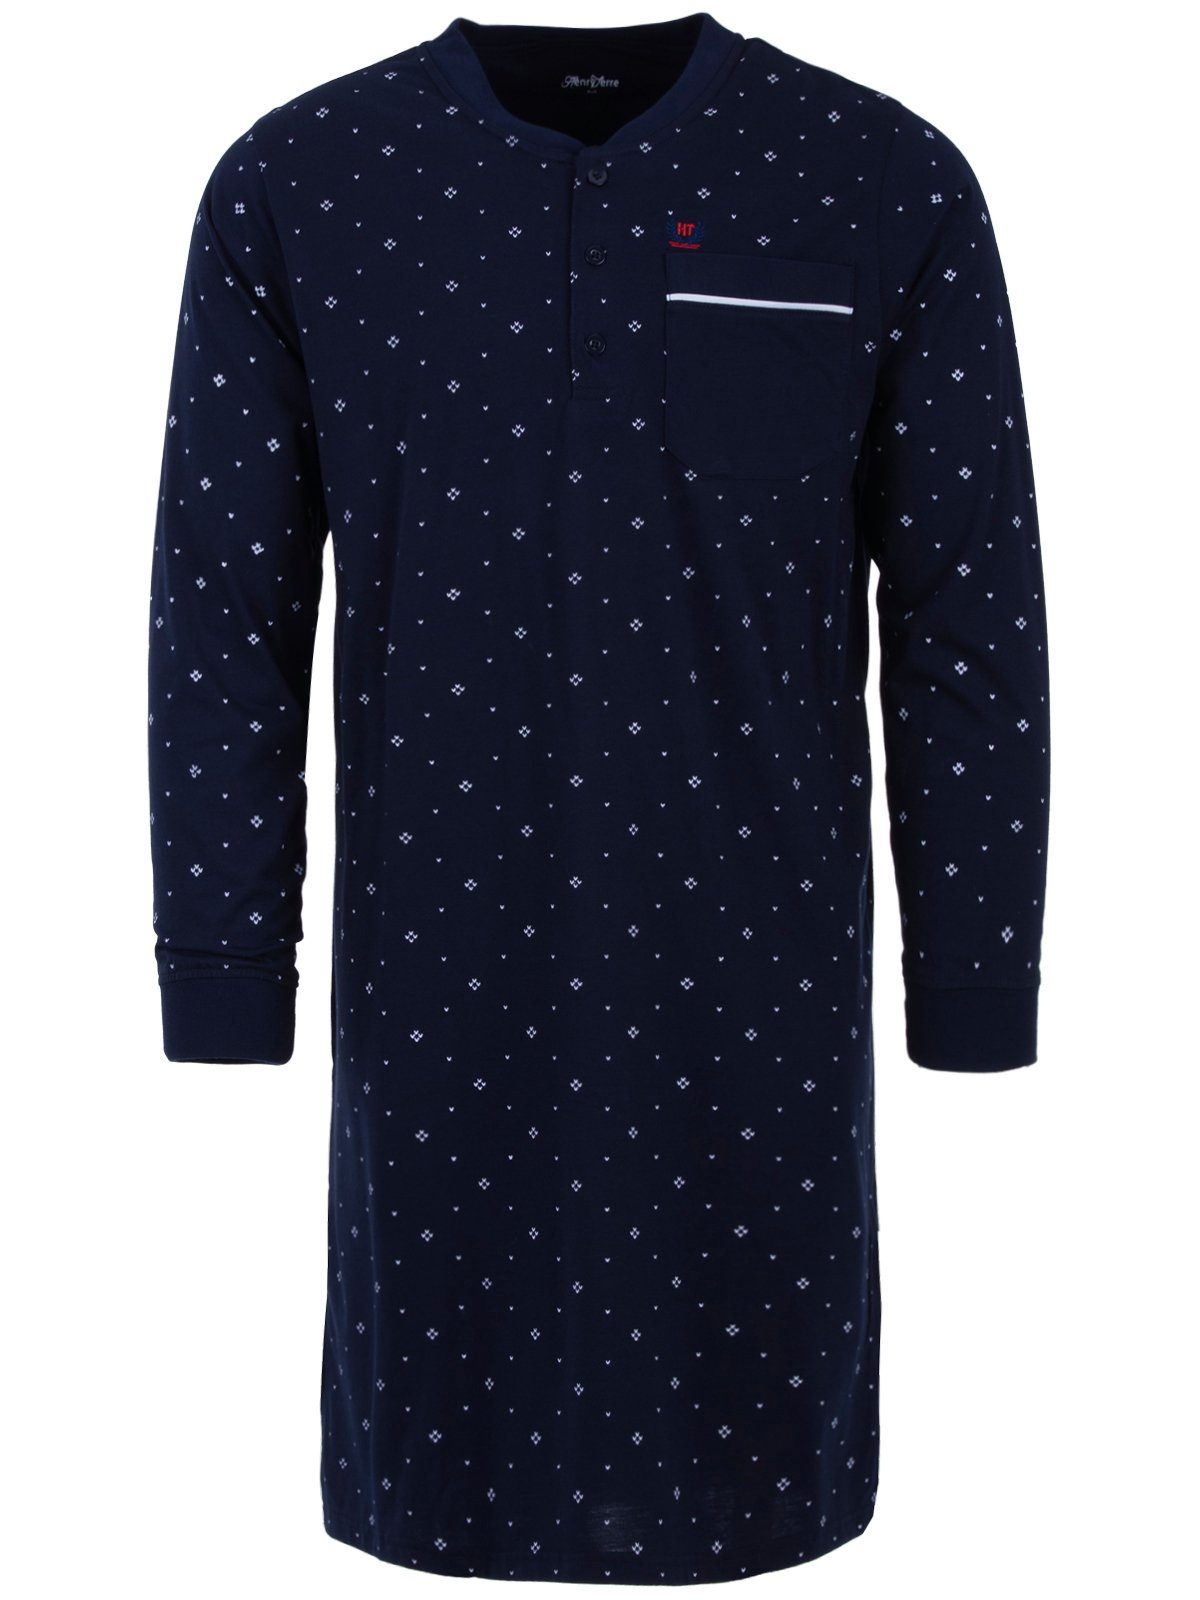 Henry Terre Nachthemd Nachthemd Langarm - Paspel Pfeil navy